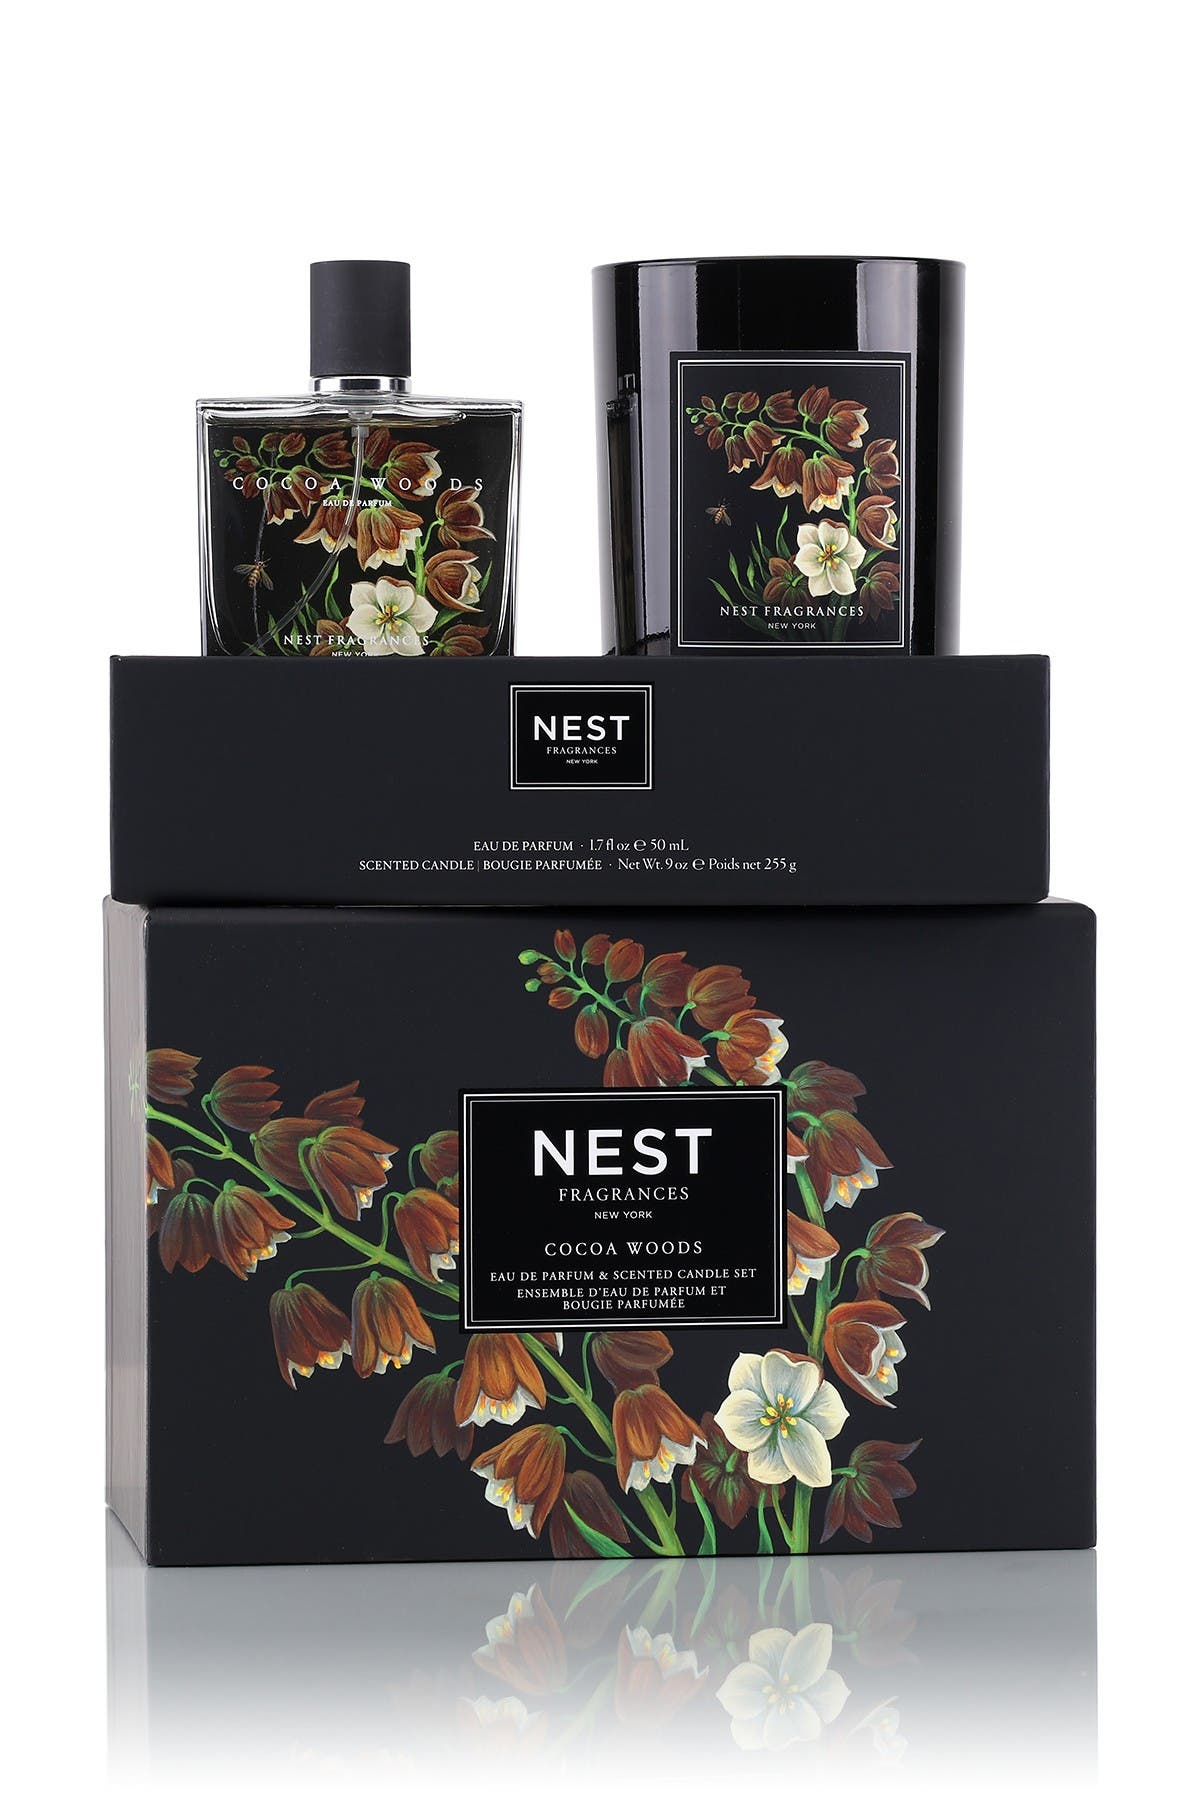 nest cocoa woods perfume